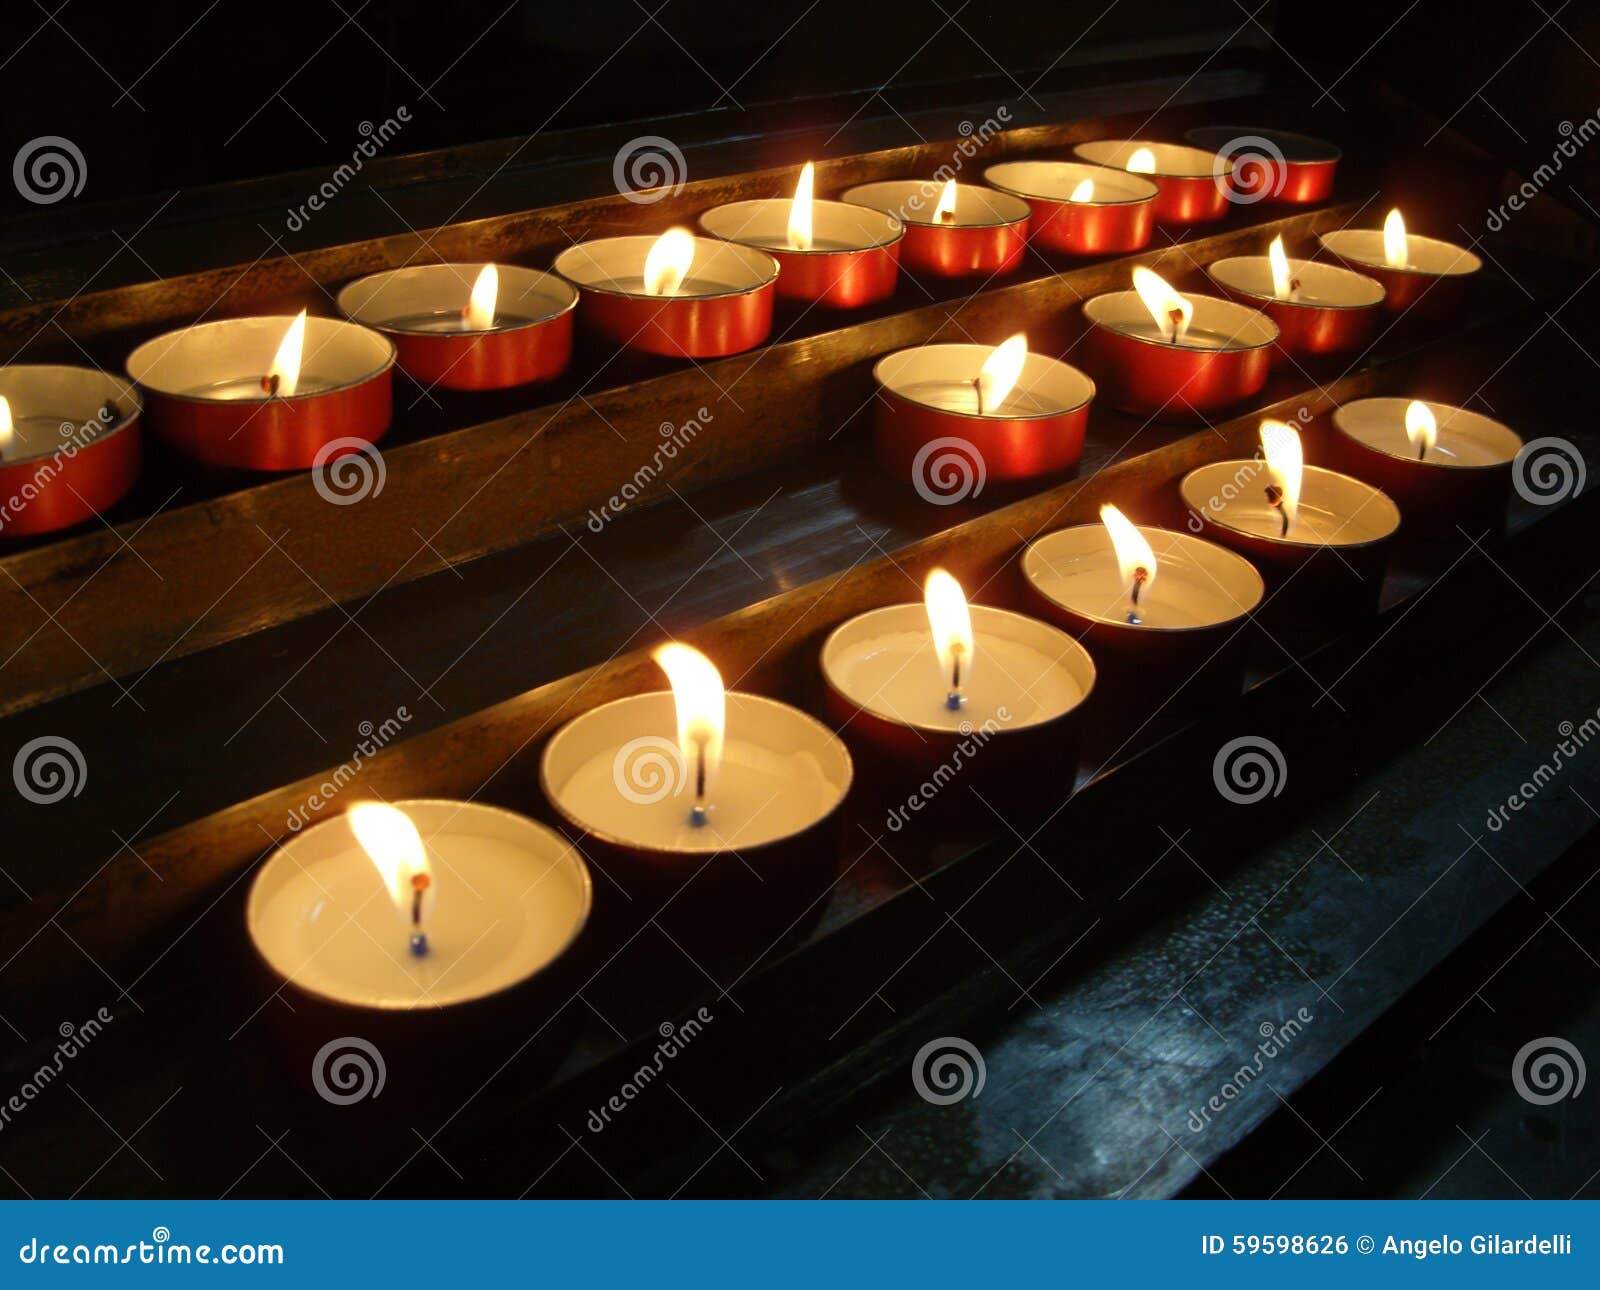 祷告 蜡烛 还愿 - Pixabay上的免费照片 - Pixabay